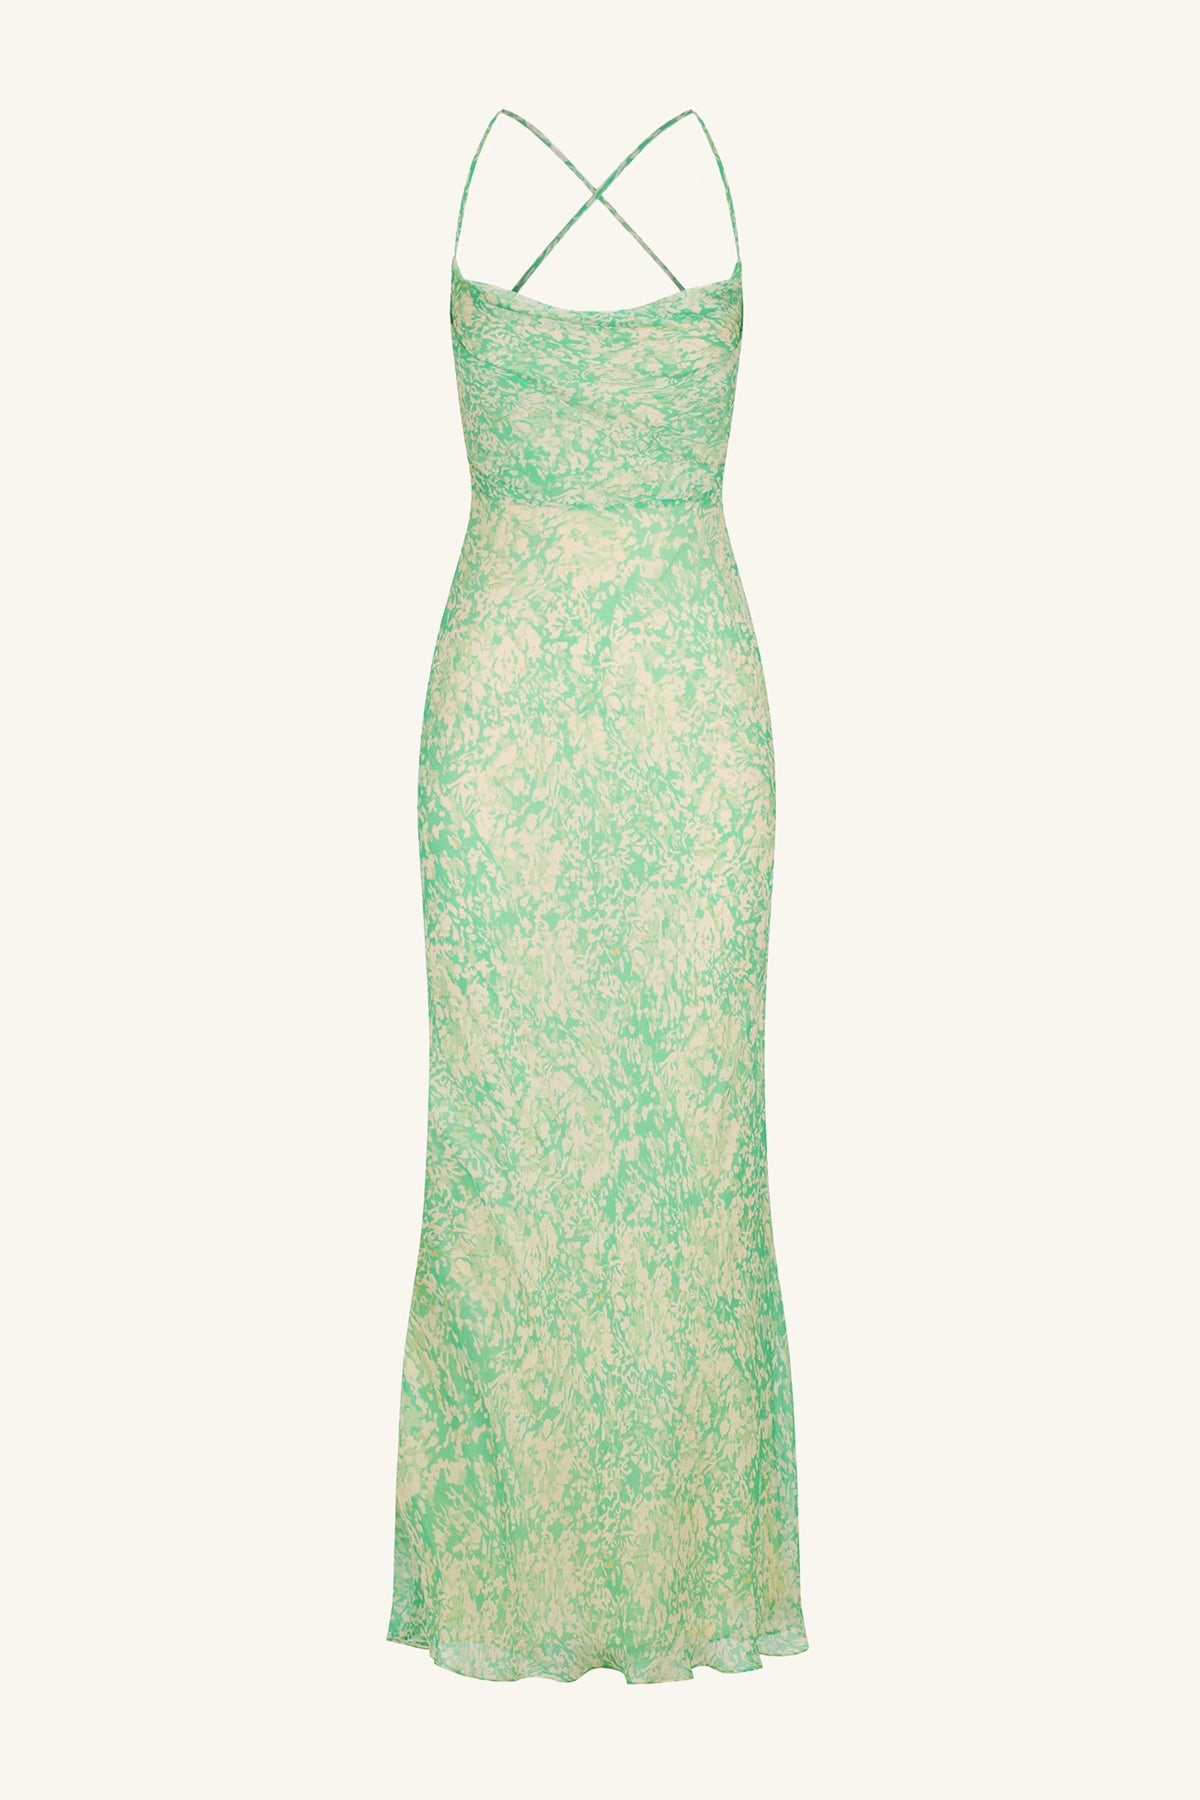 Belvedere Long Sleeve V Neck Midi Dress, Tree Green/Multi, Dresses